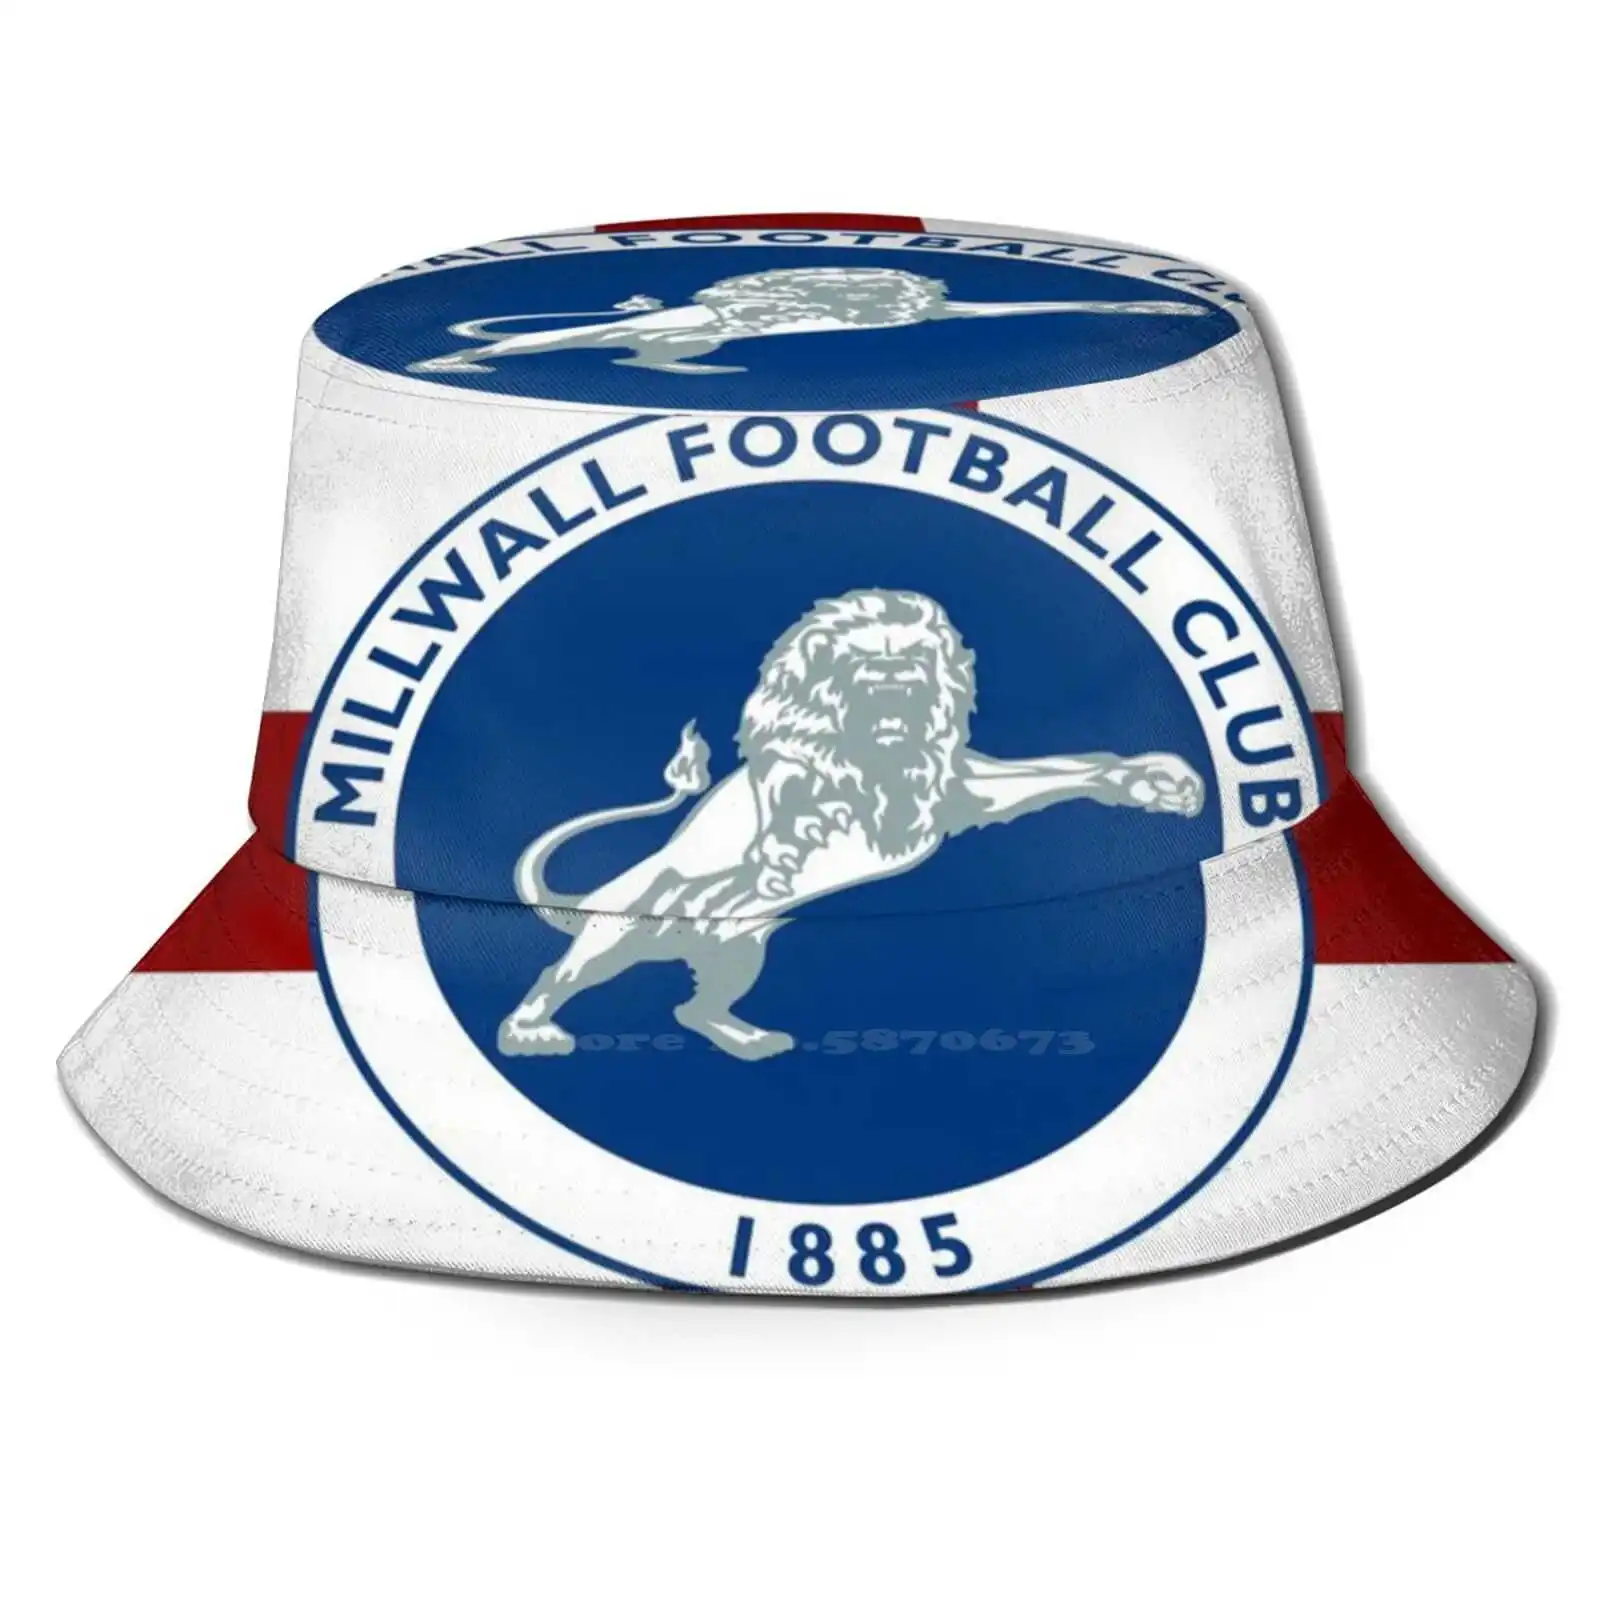 

ФК Millwall унисекс, шляпы рыбака, Панамы, шляпы Millwall, футбол, Англия